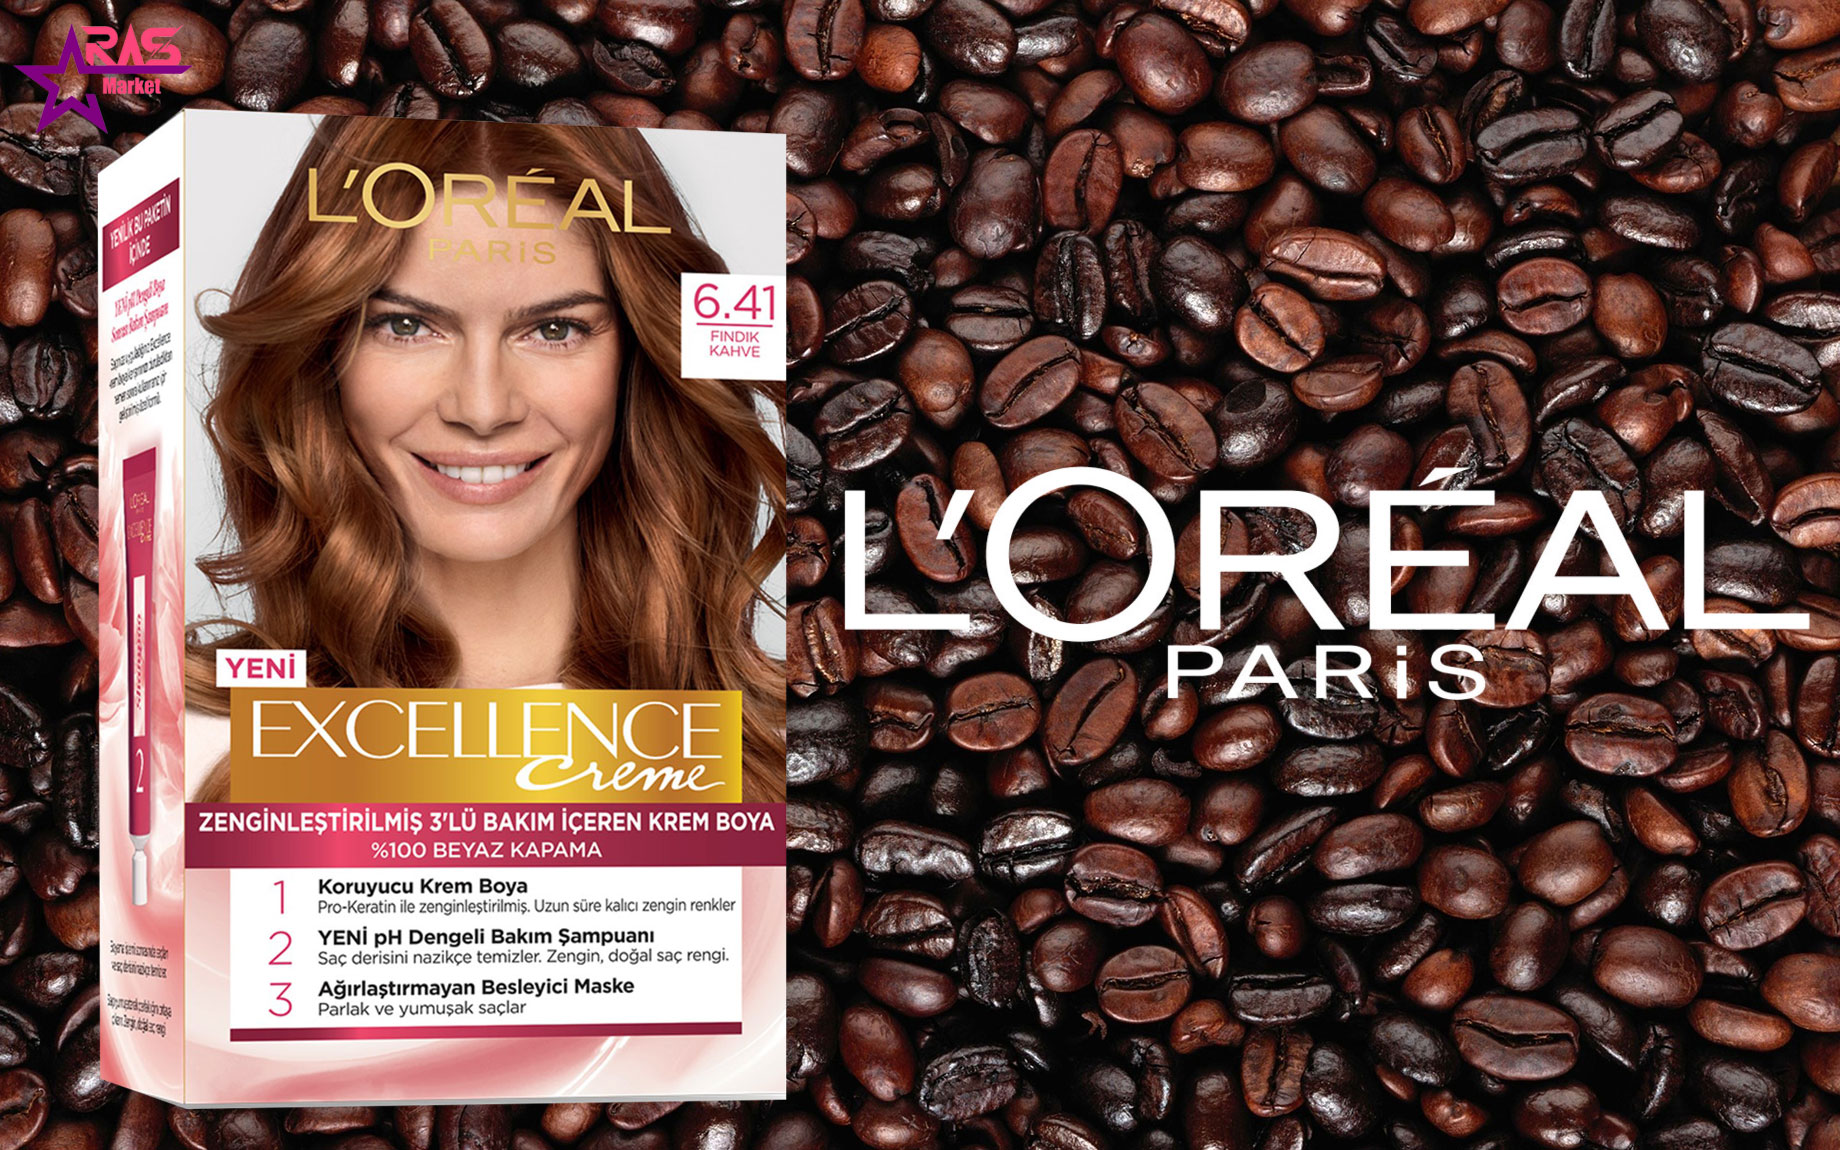 کیت رنگ مو لورآل سری Excellence شماره 6.41 ، خرید اینترنتی محصولات شوینده و بهداشتی ، بهداشت بانوان ، رنگ موی زنانه